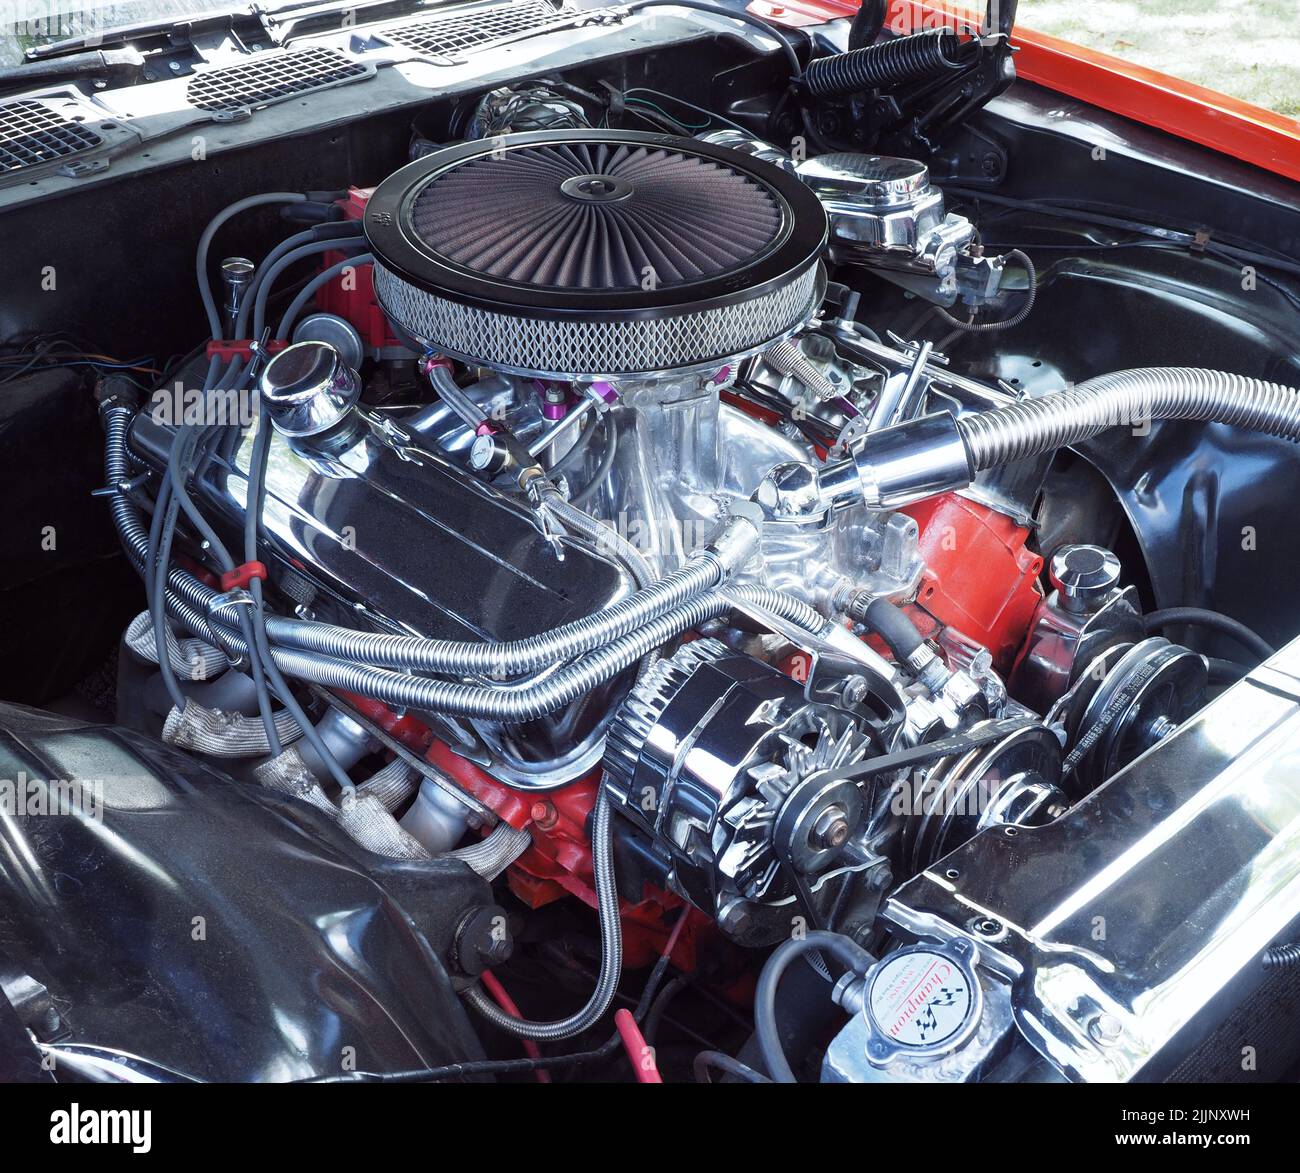 Dettaglio di a 1970, Camero Z28 Chevy 7,4lt, 454 pollici cubici, motore a benzina Big Block V8, collettore Edelbrock, filtro aria K&N pancake, radiatore cromato. Foto Stock